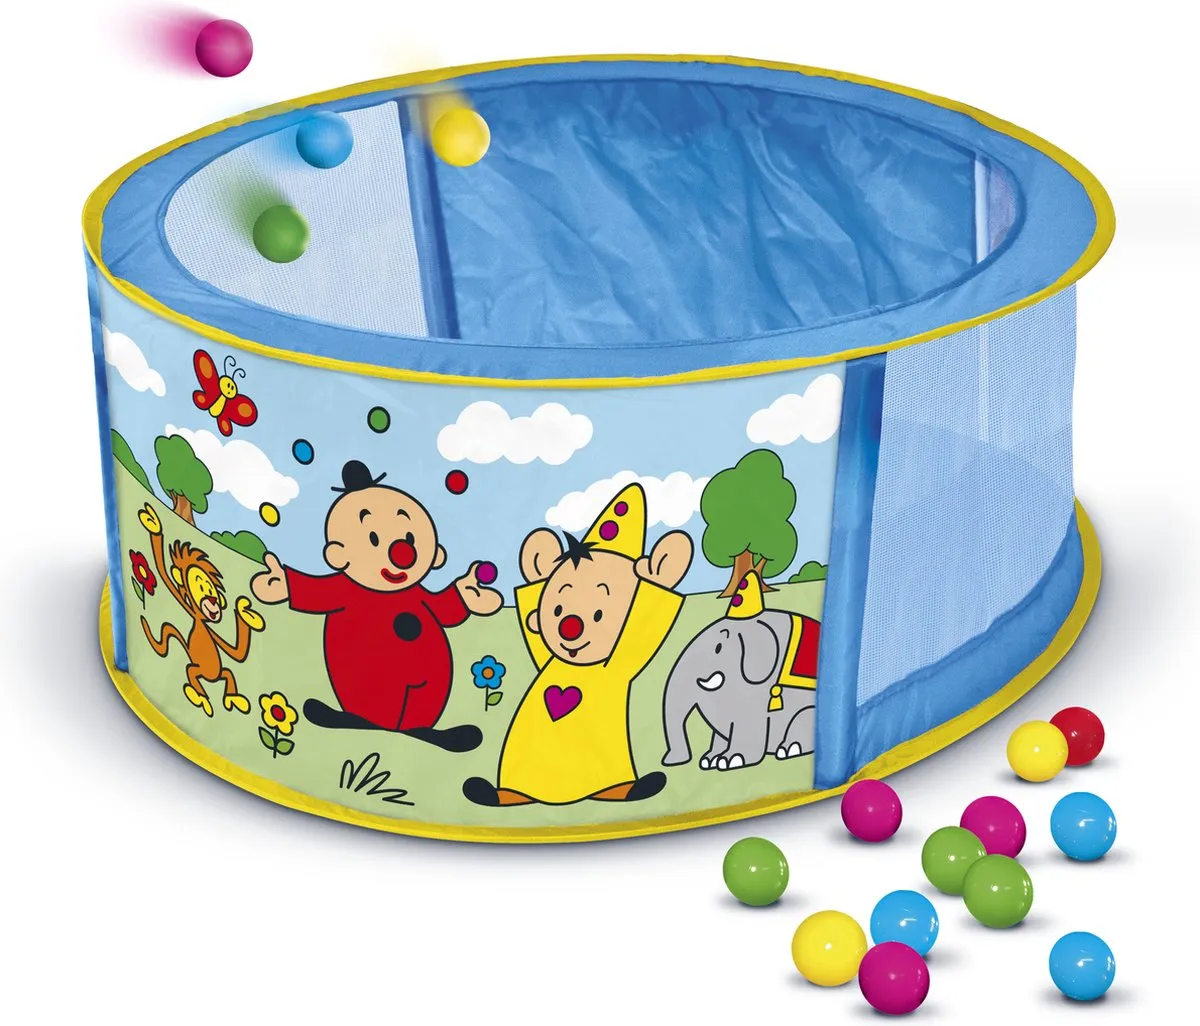 Bumba ballenbak - ballenbad inclusief 50 ballen - 73 cm doorsnede speelgoed